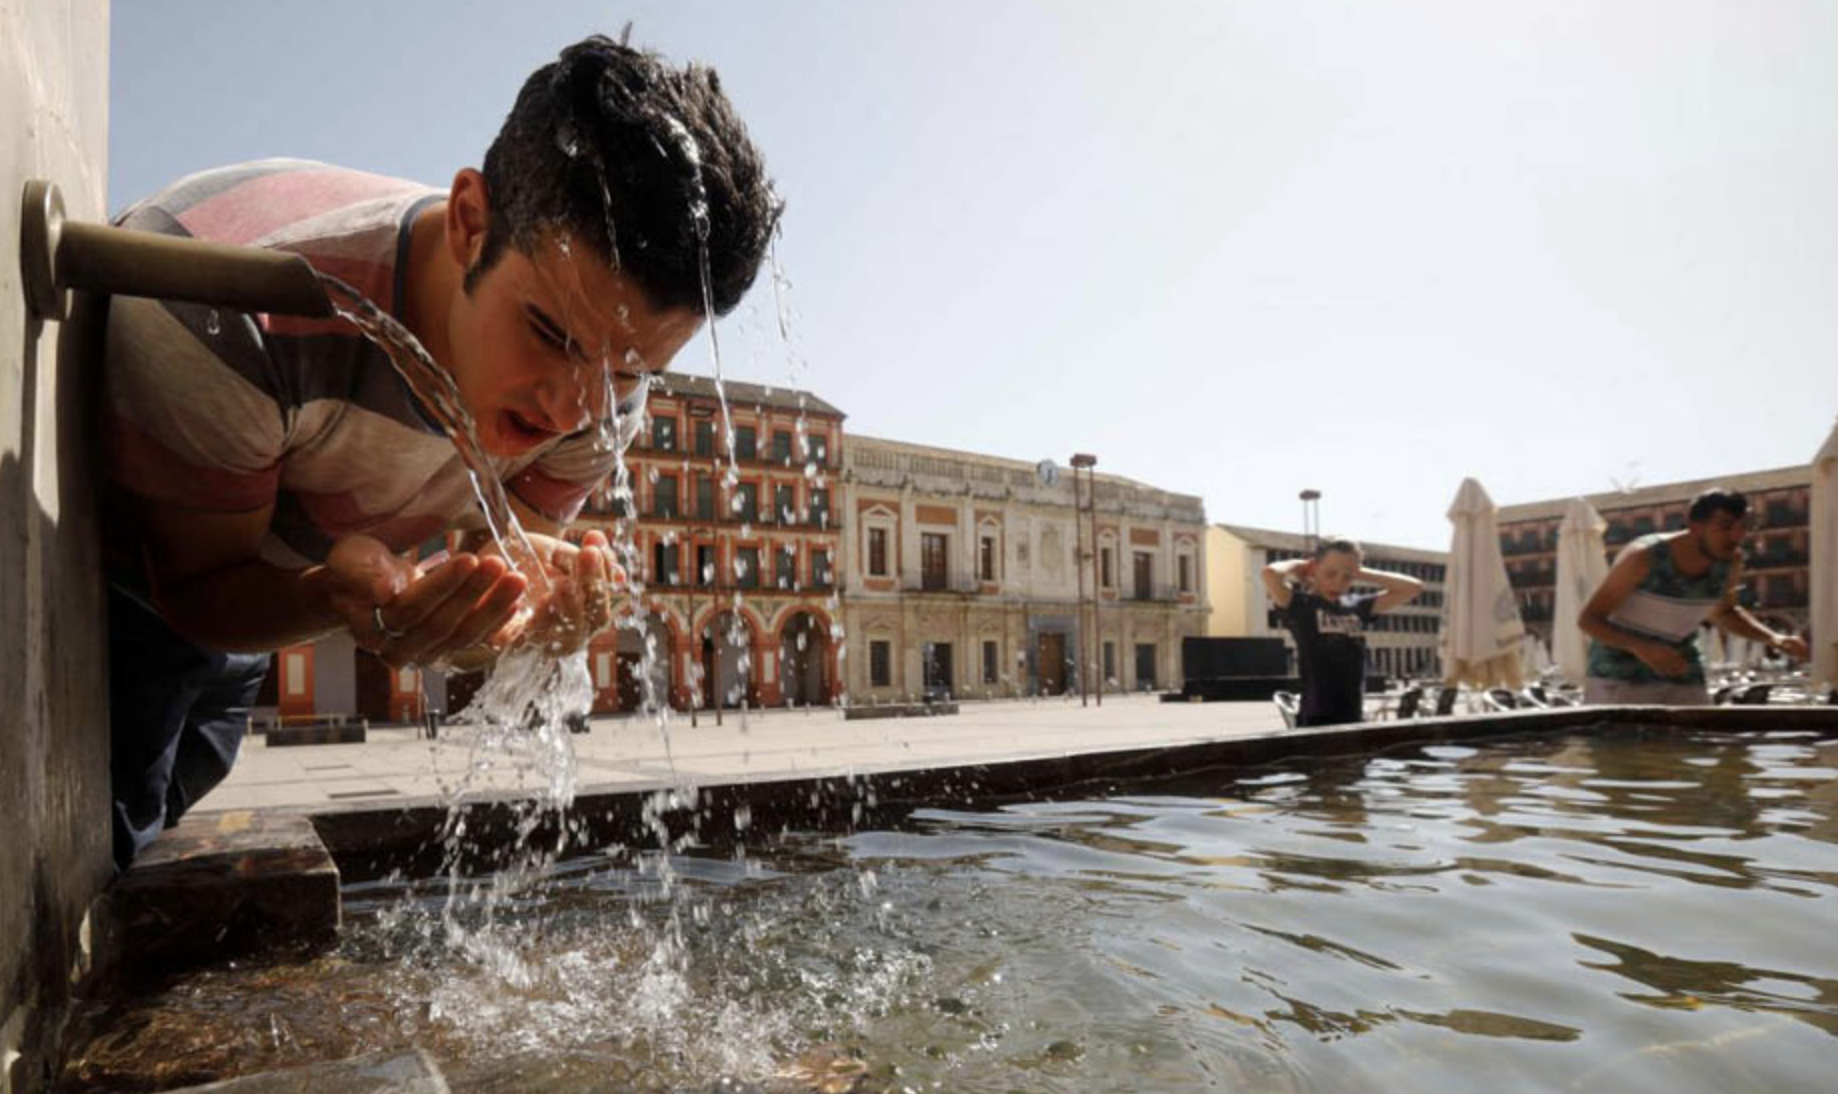 Una persona se refresca en una fuente ante el calor extremo de estos días, en una imagen de Canal Sur.